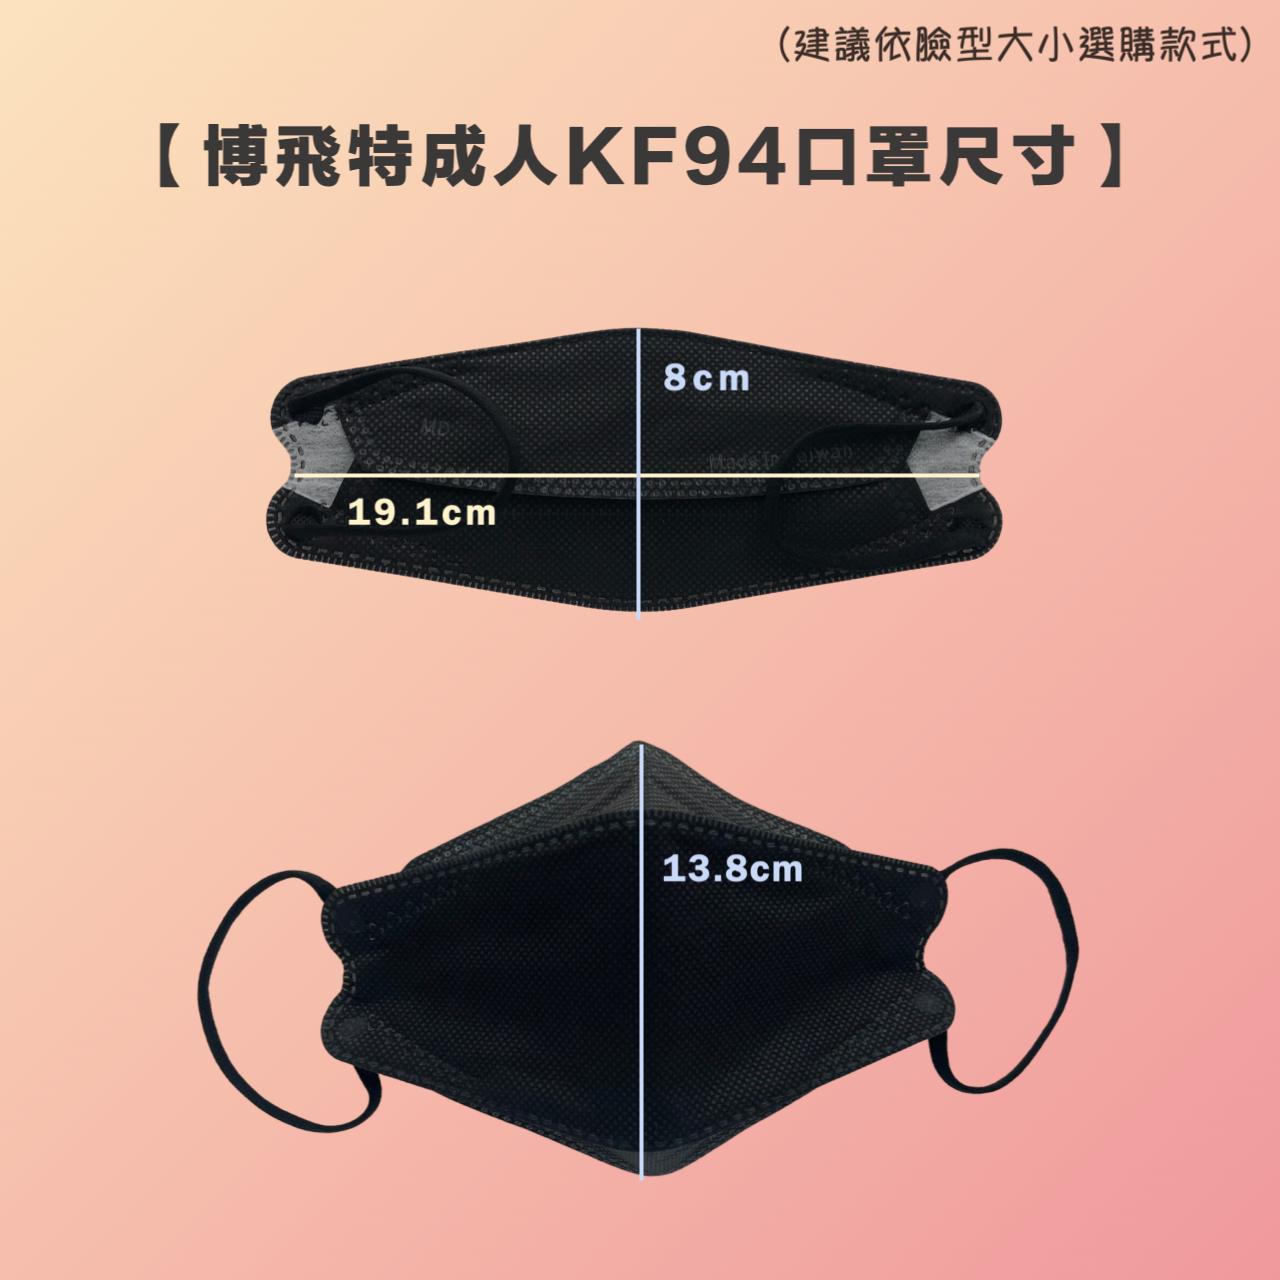 博飛特成人KF94口罩尺寸圖